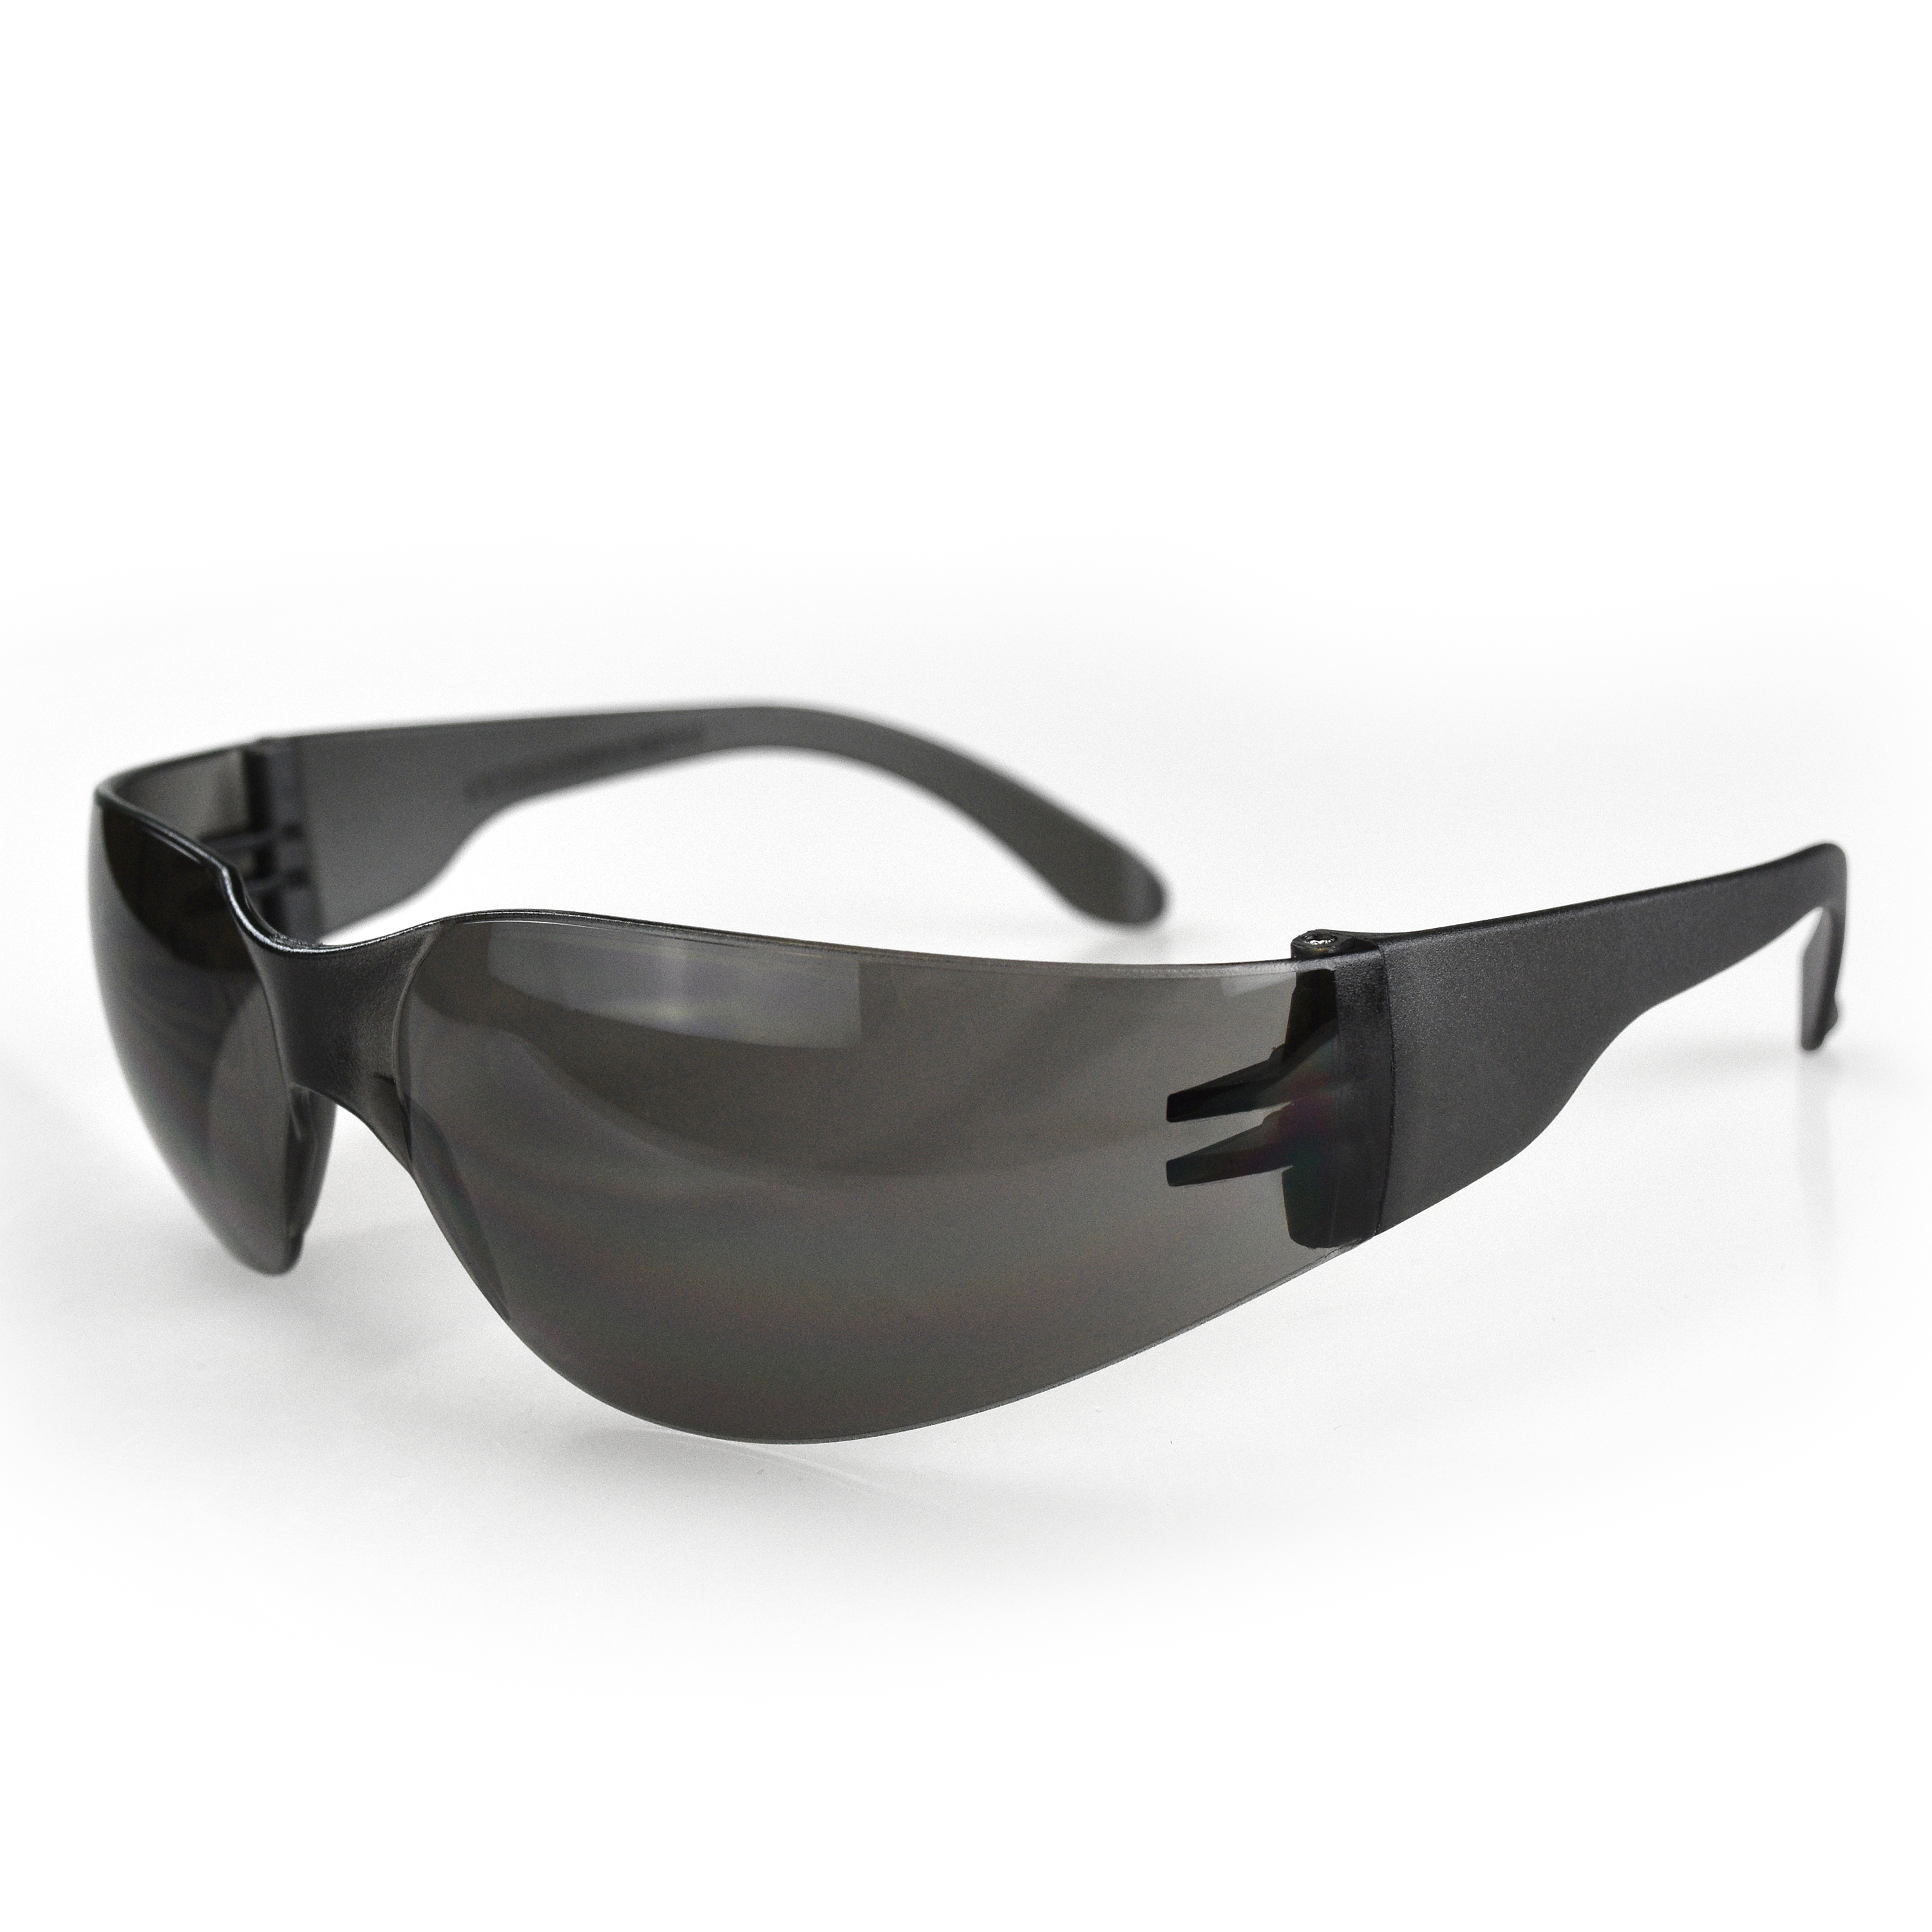 Mirage™ Safety Eyewear - Smoke Frame - Smoke Lens - Tinted Lens